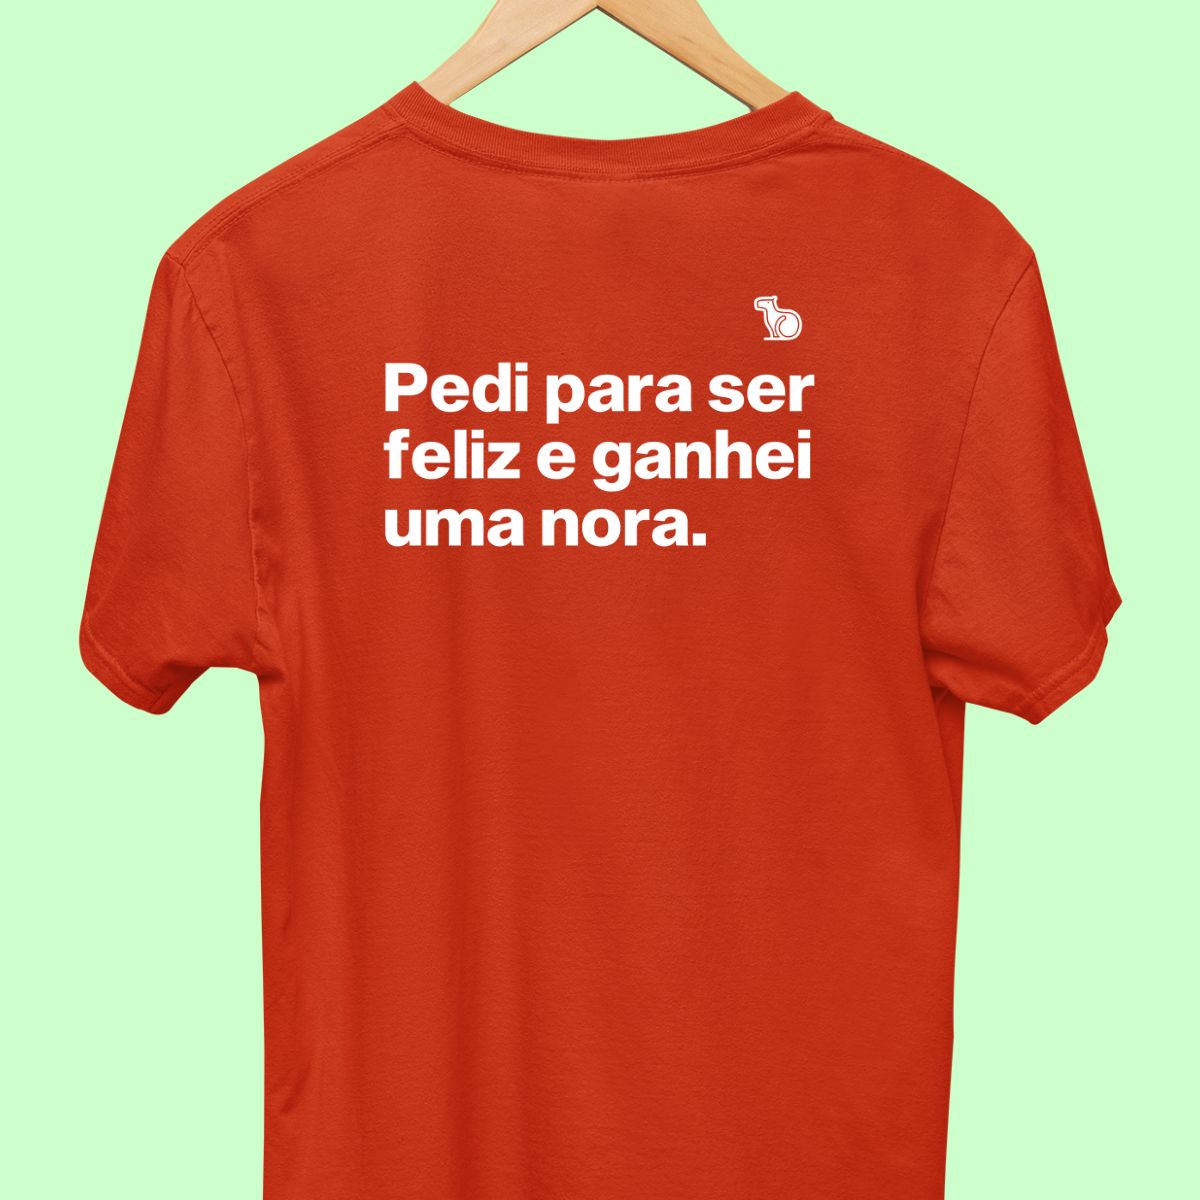 Camiseta com a frase "Pedi para ser feliz e ganhei uma nora." masculina vermelha.